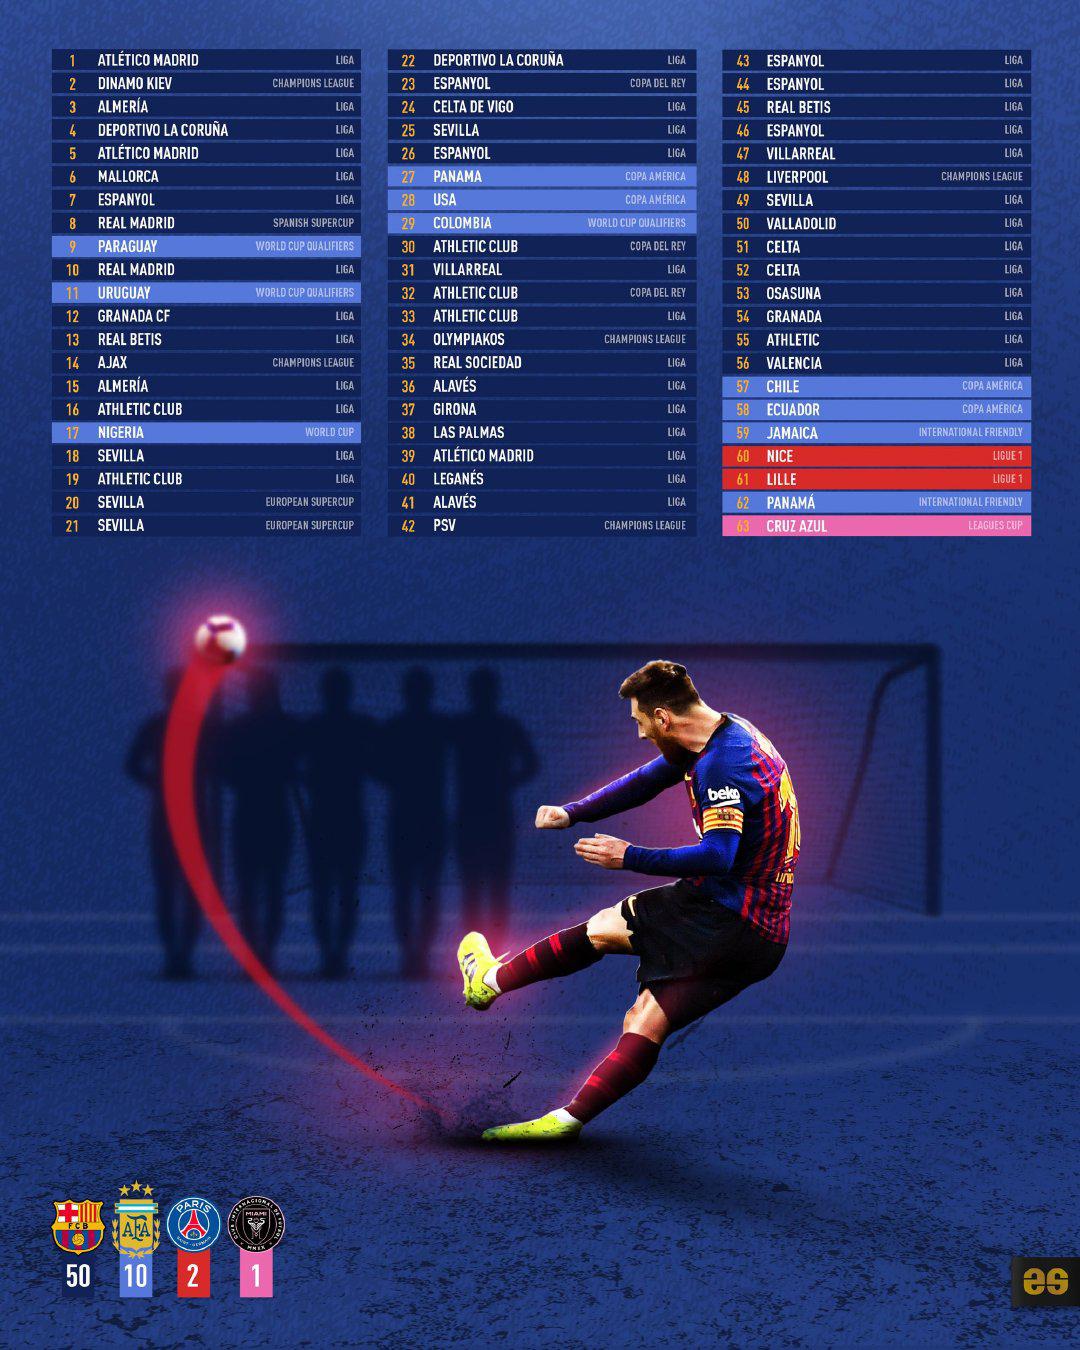 梅西职业生涯63粒任意球进球全记录[哇][哇][哇]#梅西[超话]# #梅西任意(1)